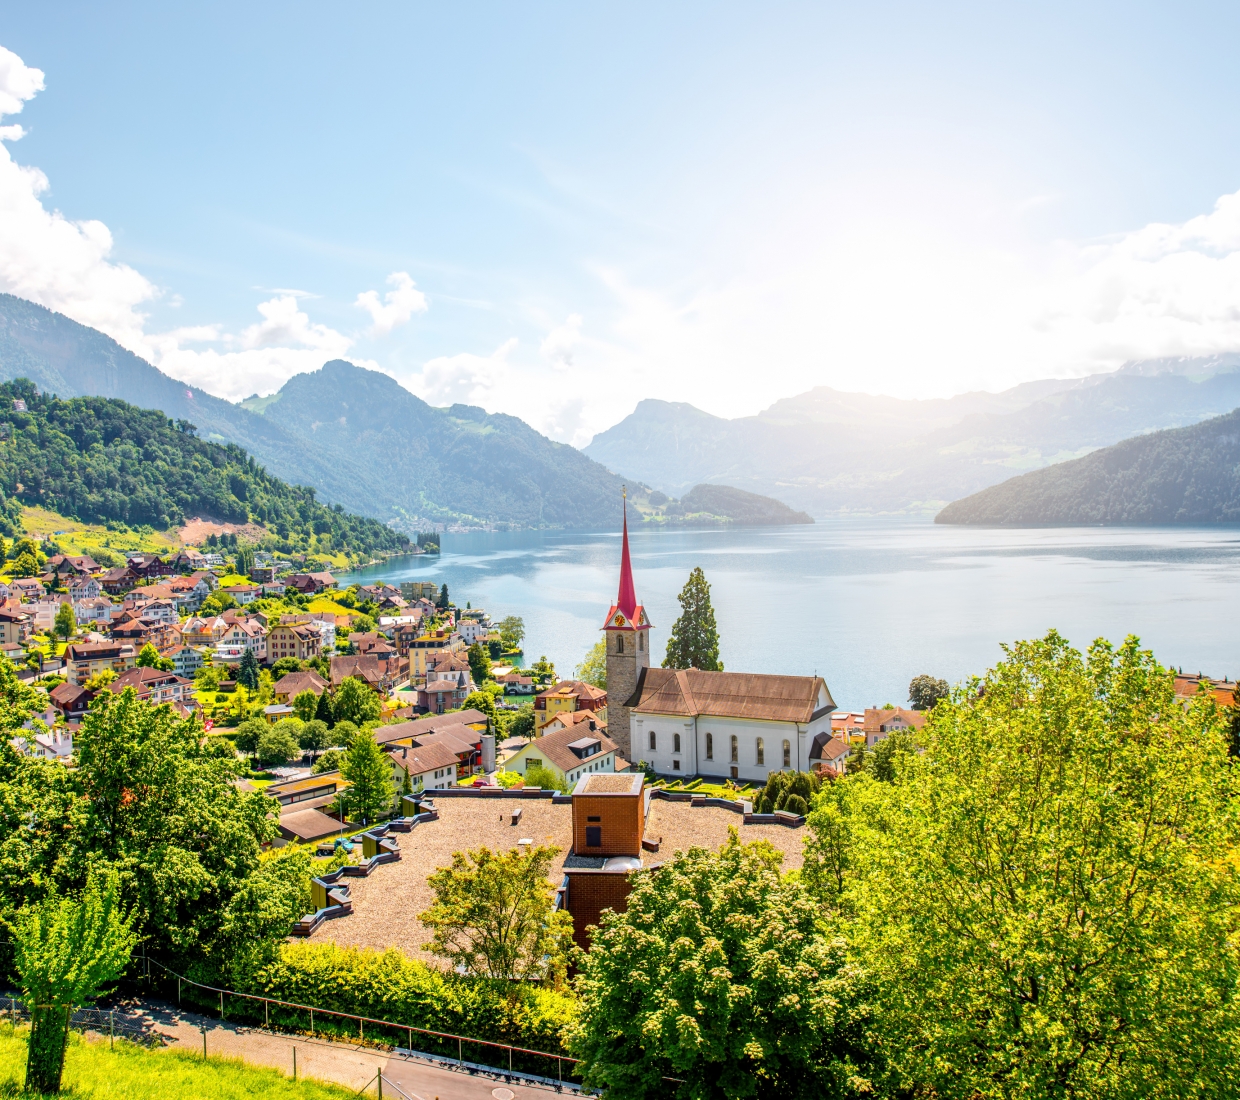 Lucerne – Lake of Lucerne